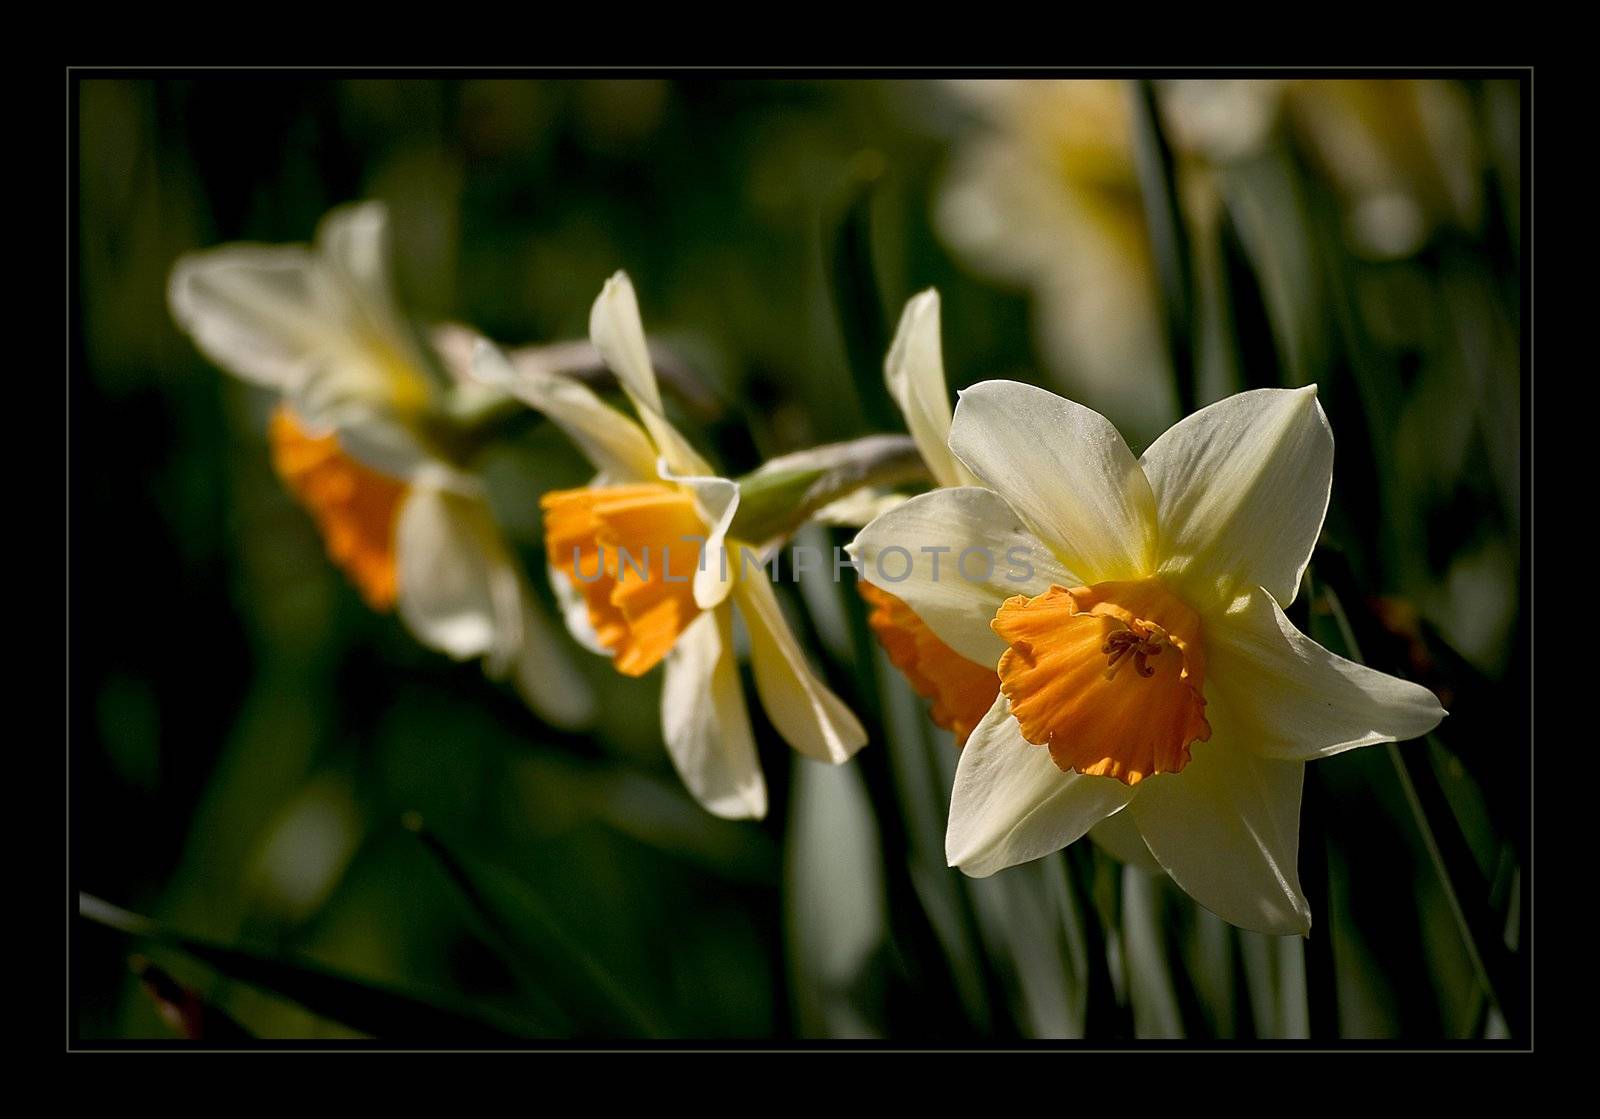 Narcissus by miradrozdowski